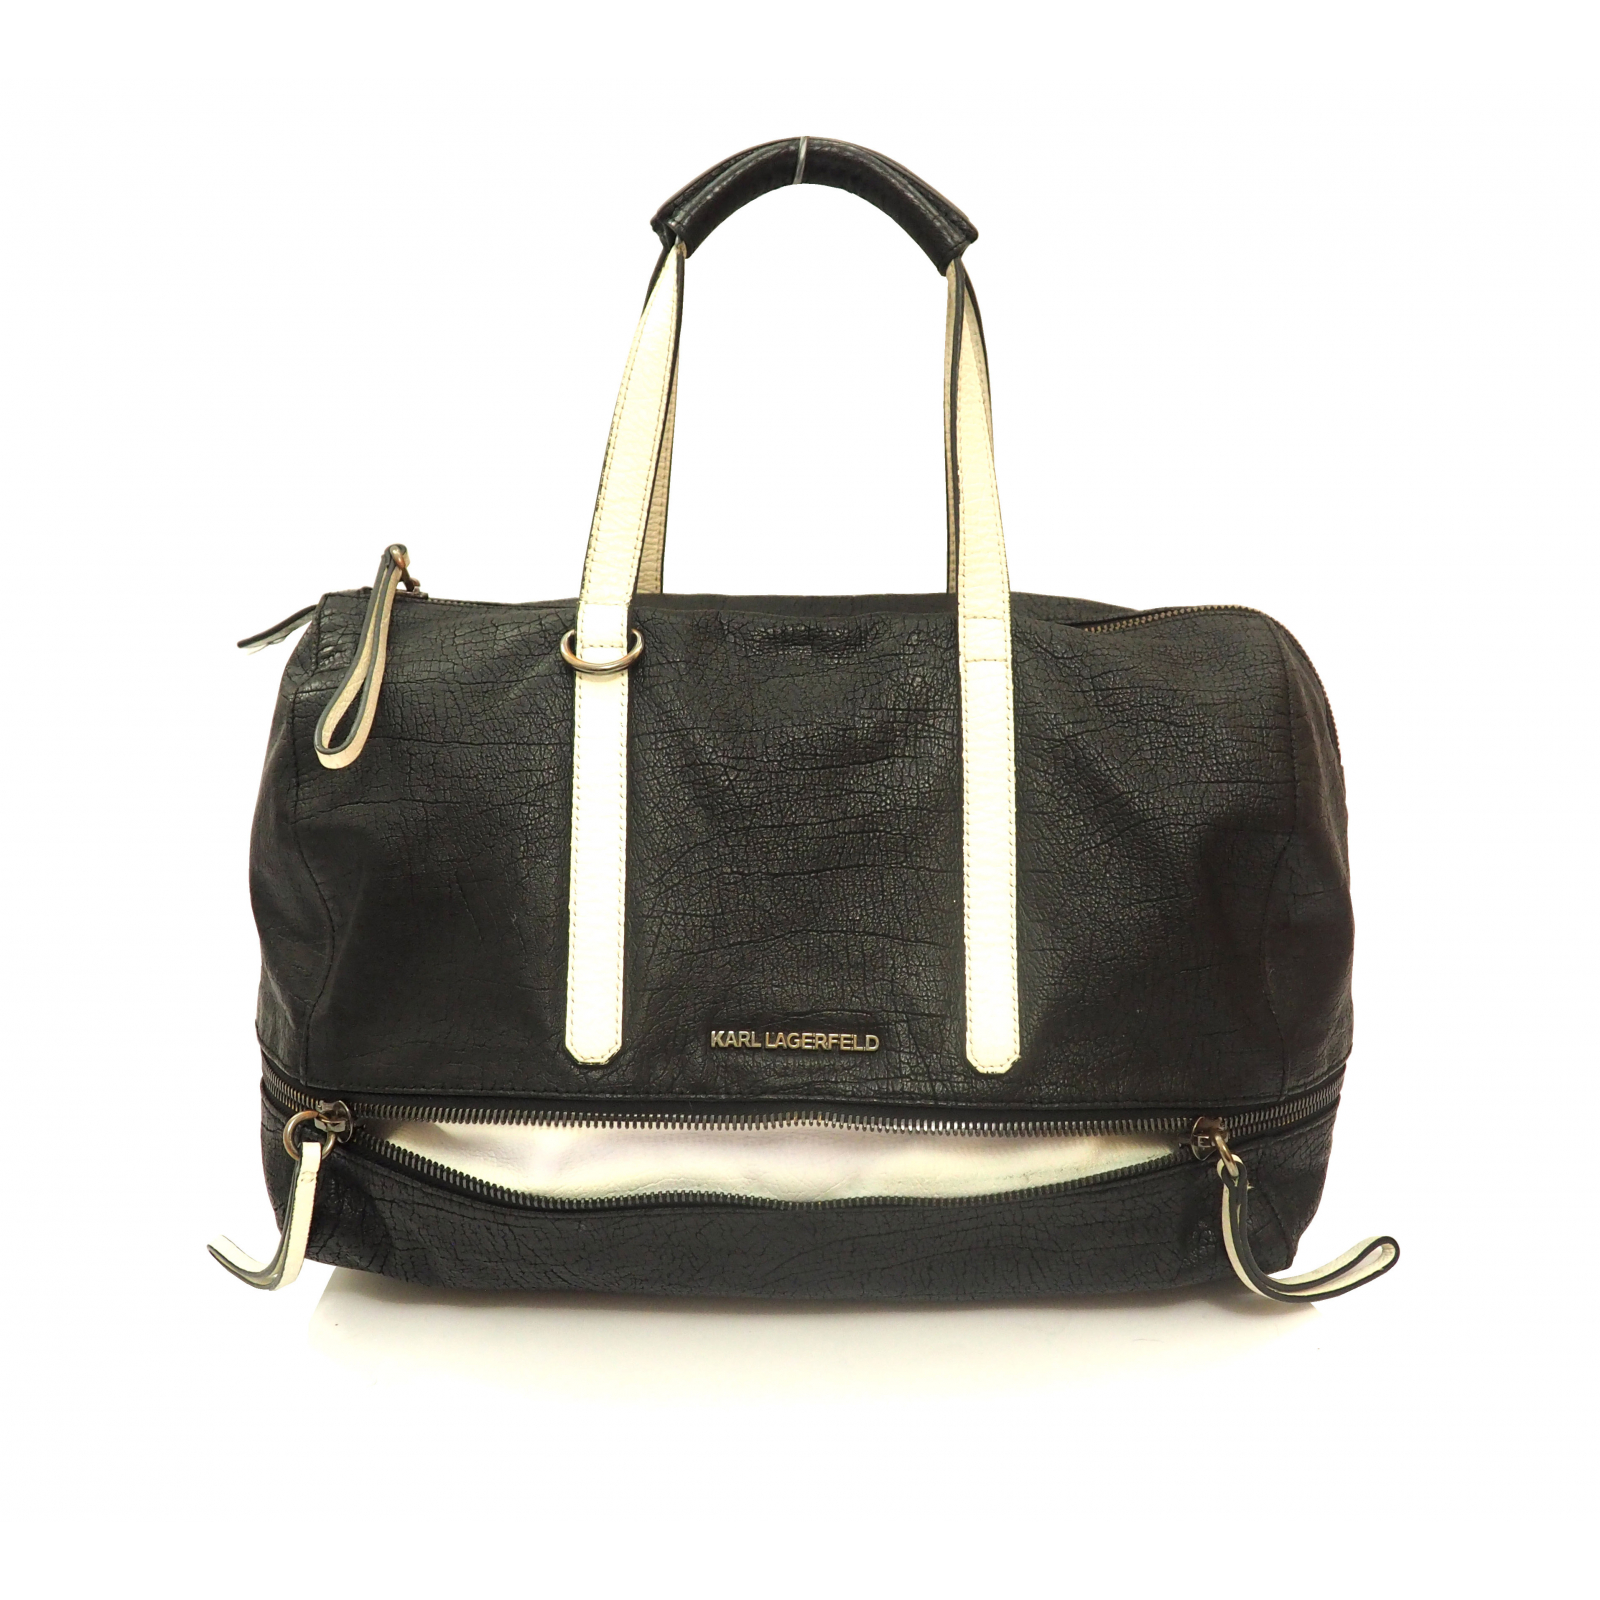 Karl Lagerfeld Czarno-biała torebka Bowletto Bag